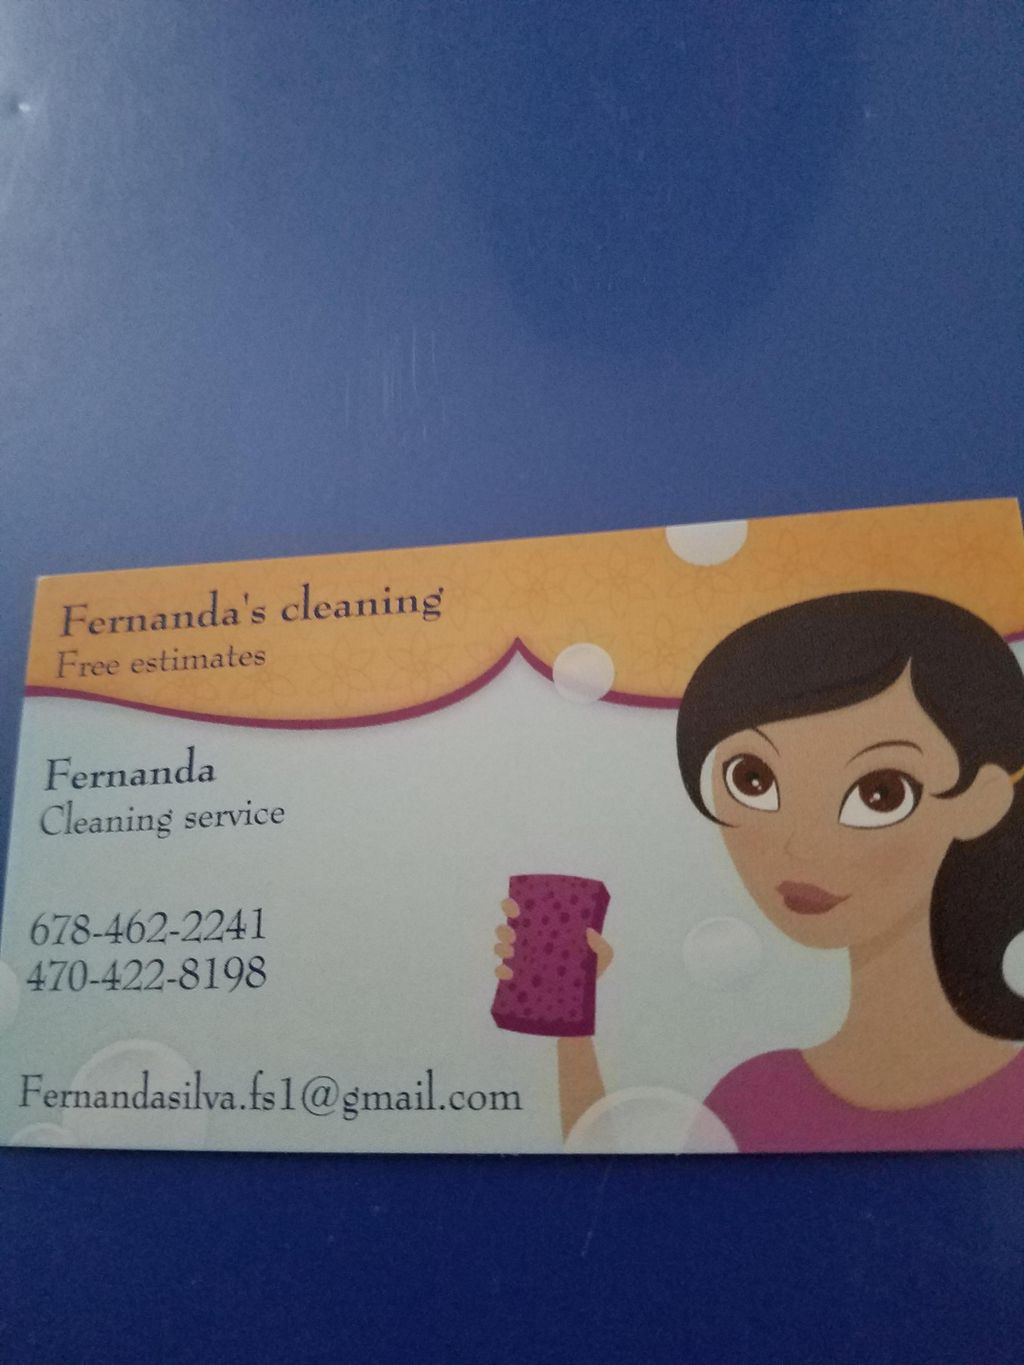 Fernanda's cleaning